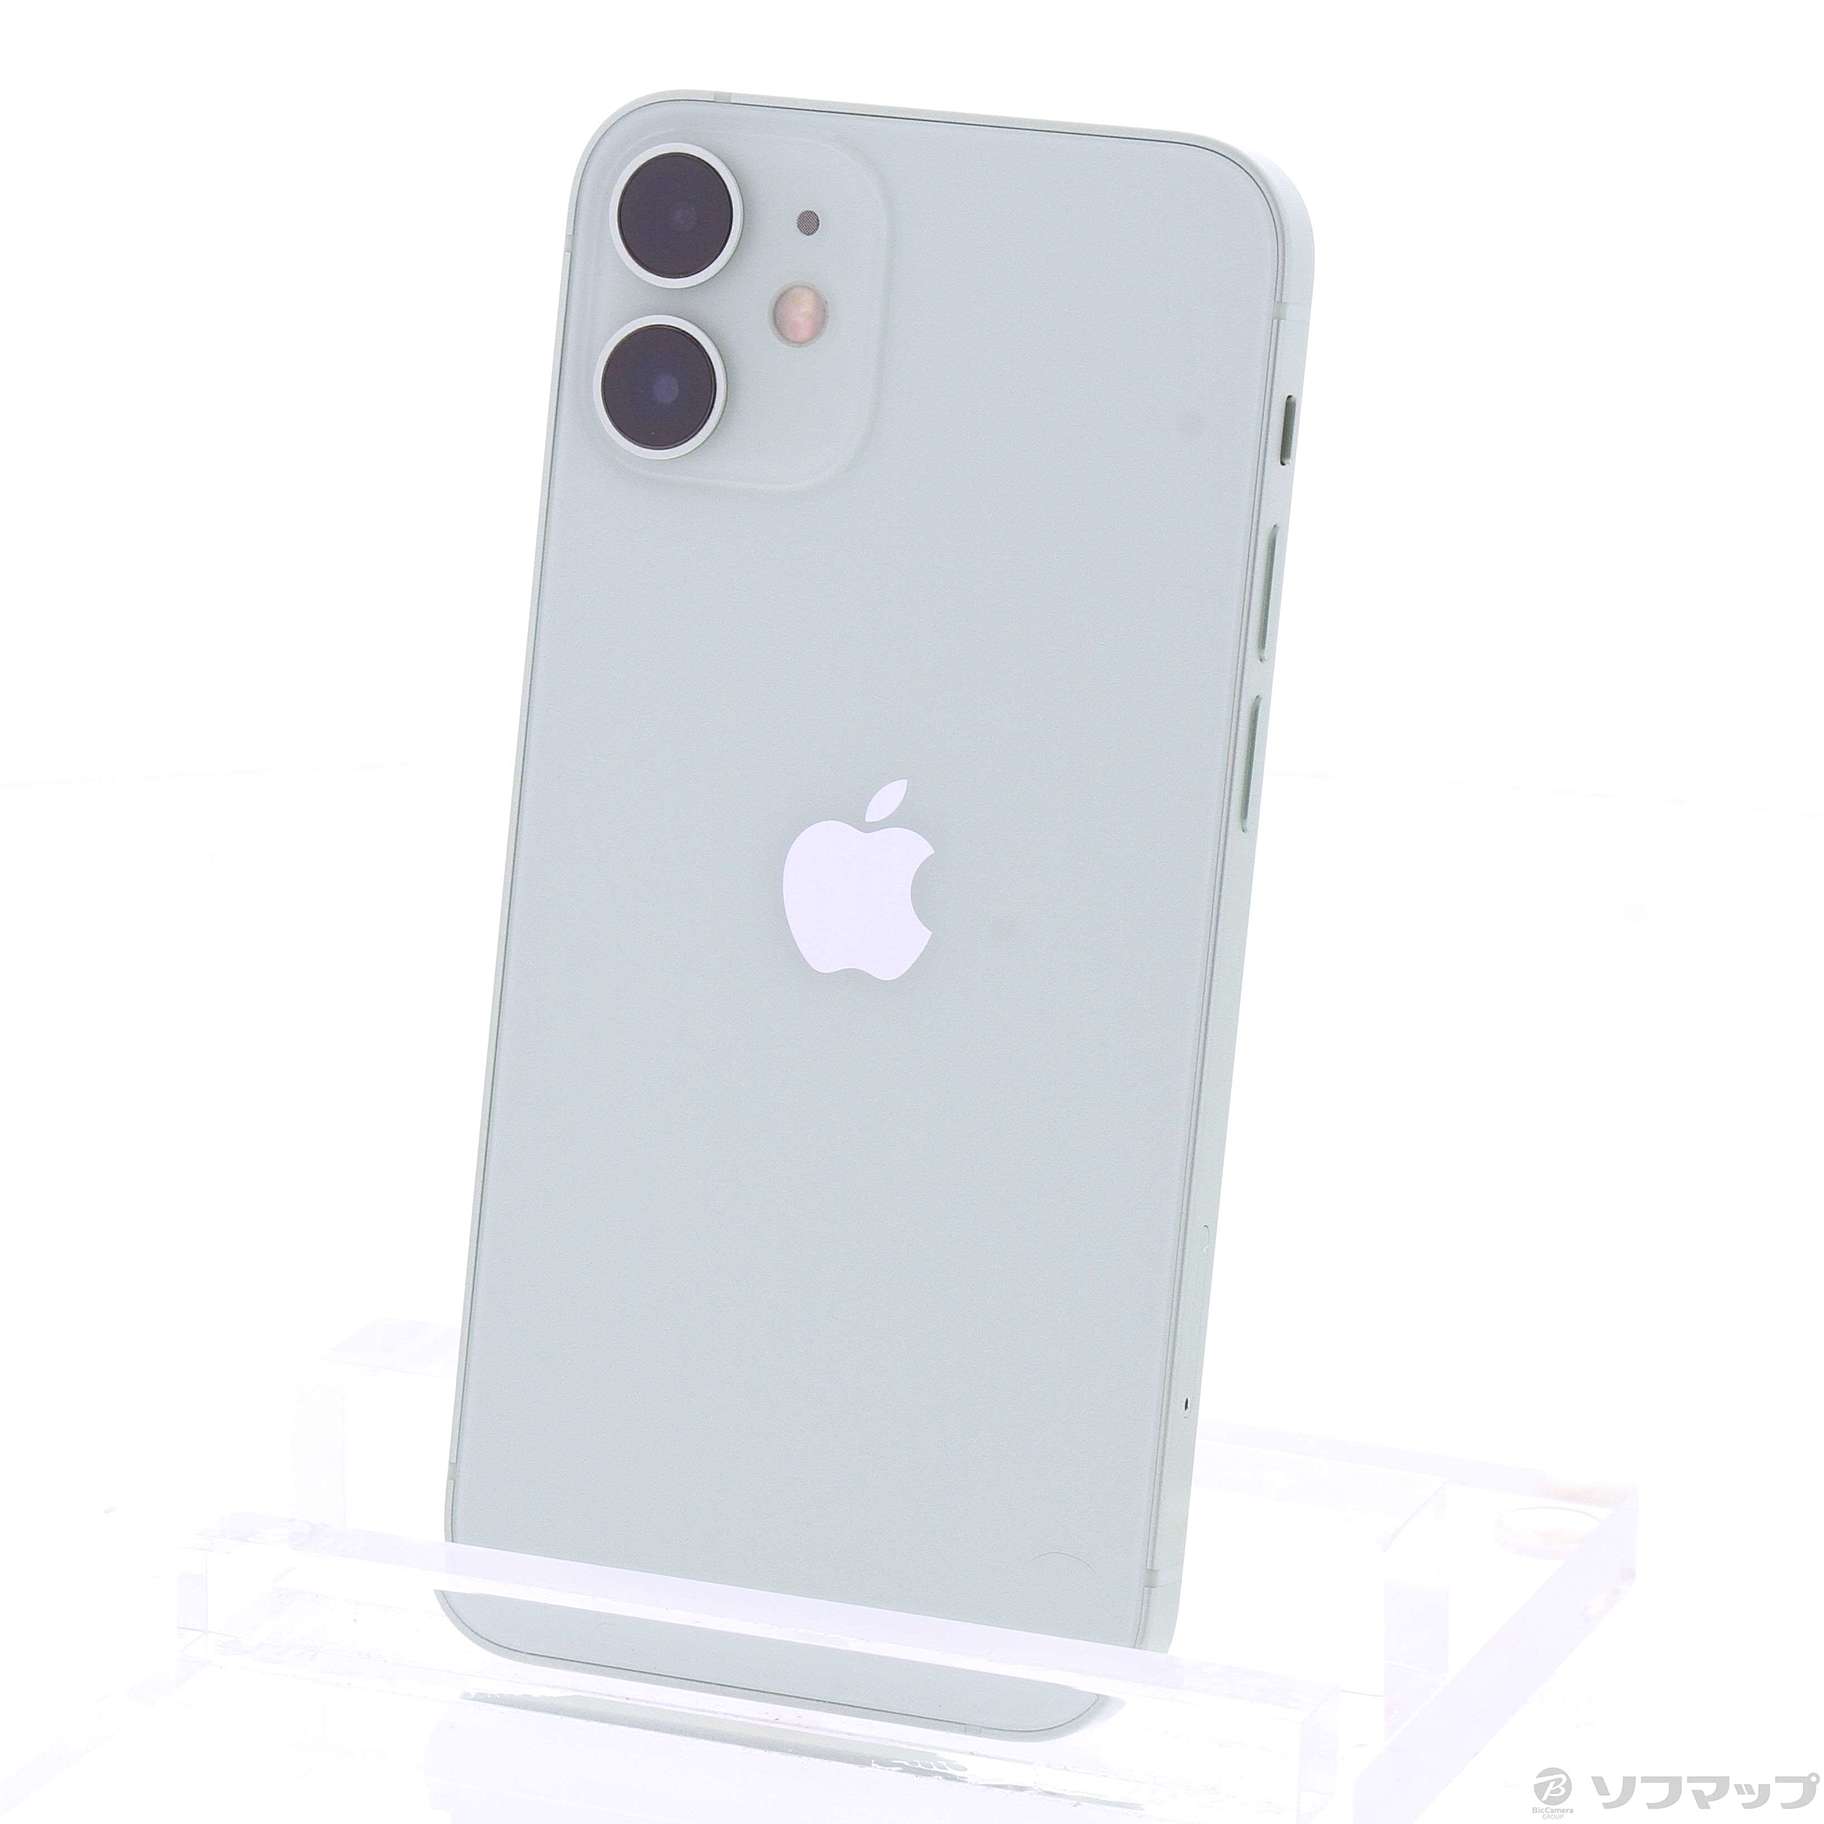 iPhone12 mini グリーン 128GB simフリー - スマートフォン/携帯電話